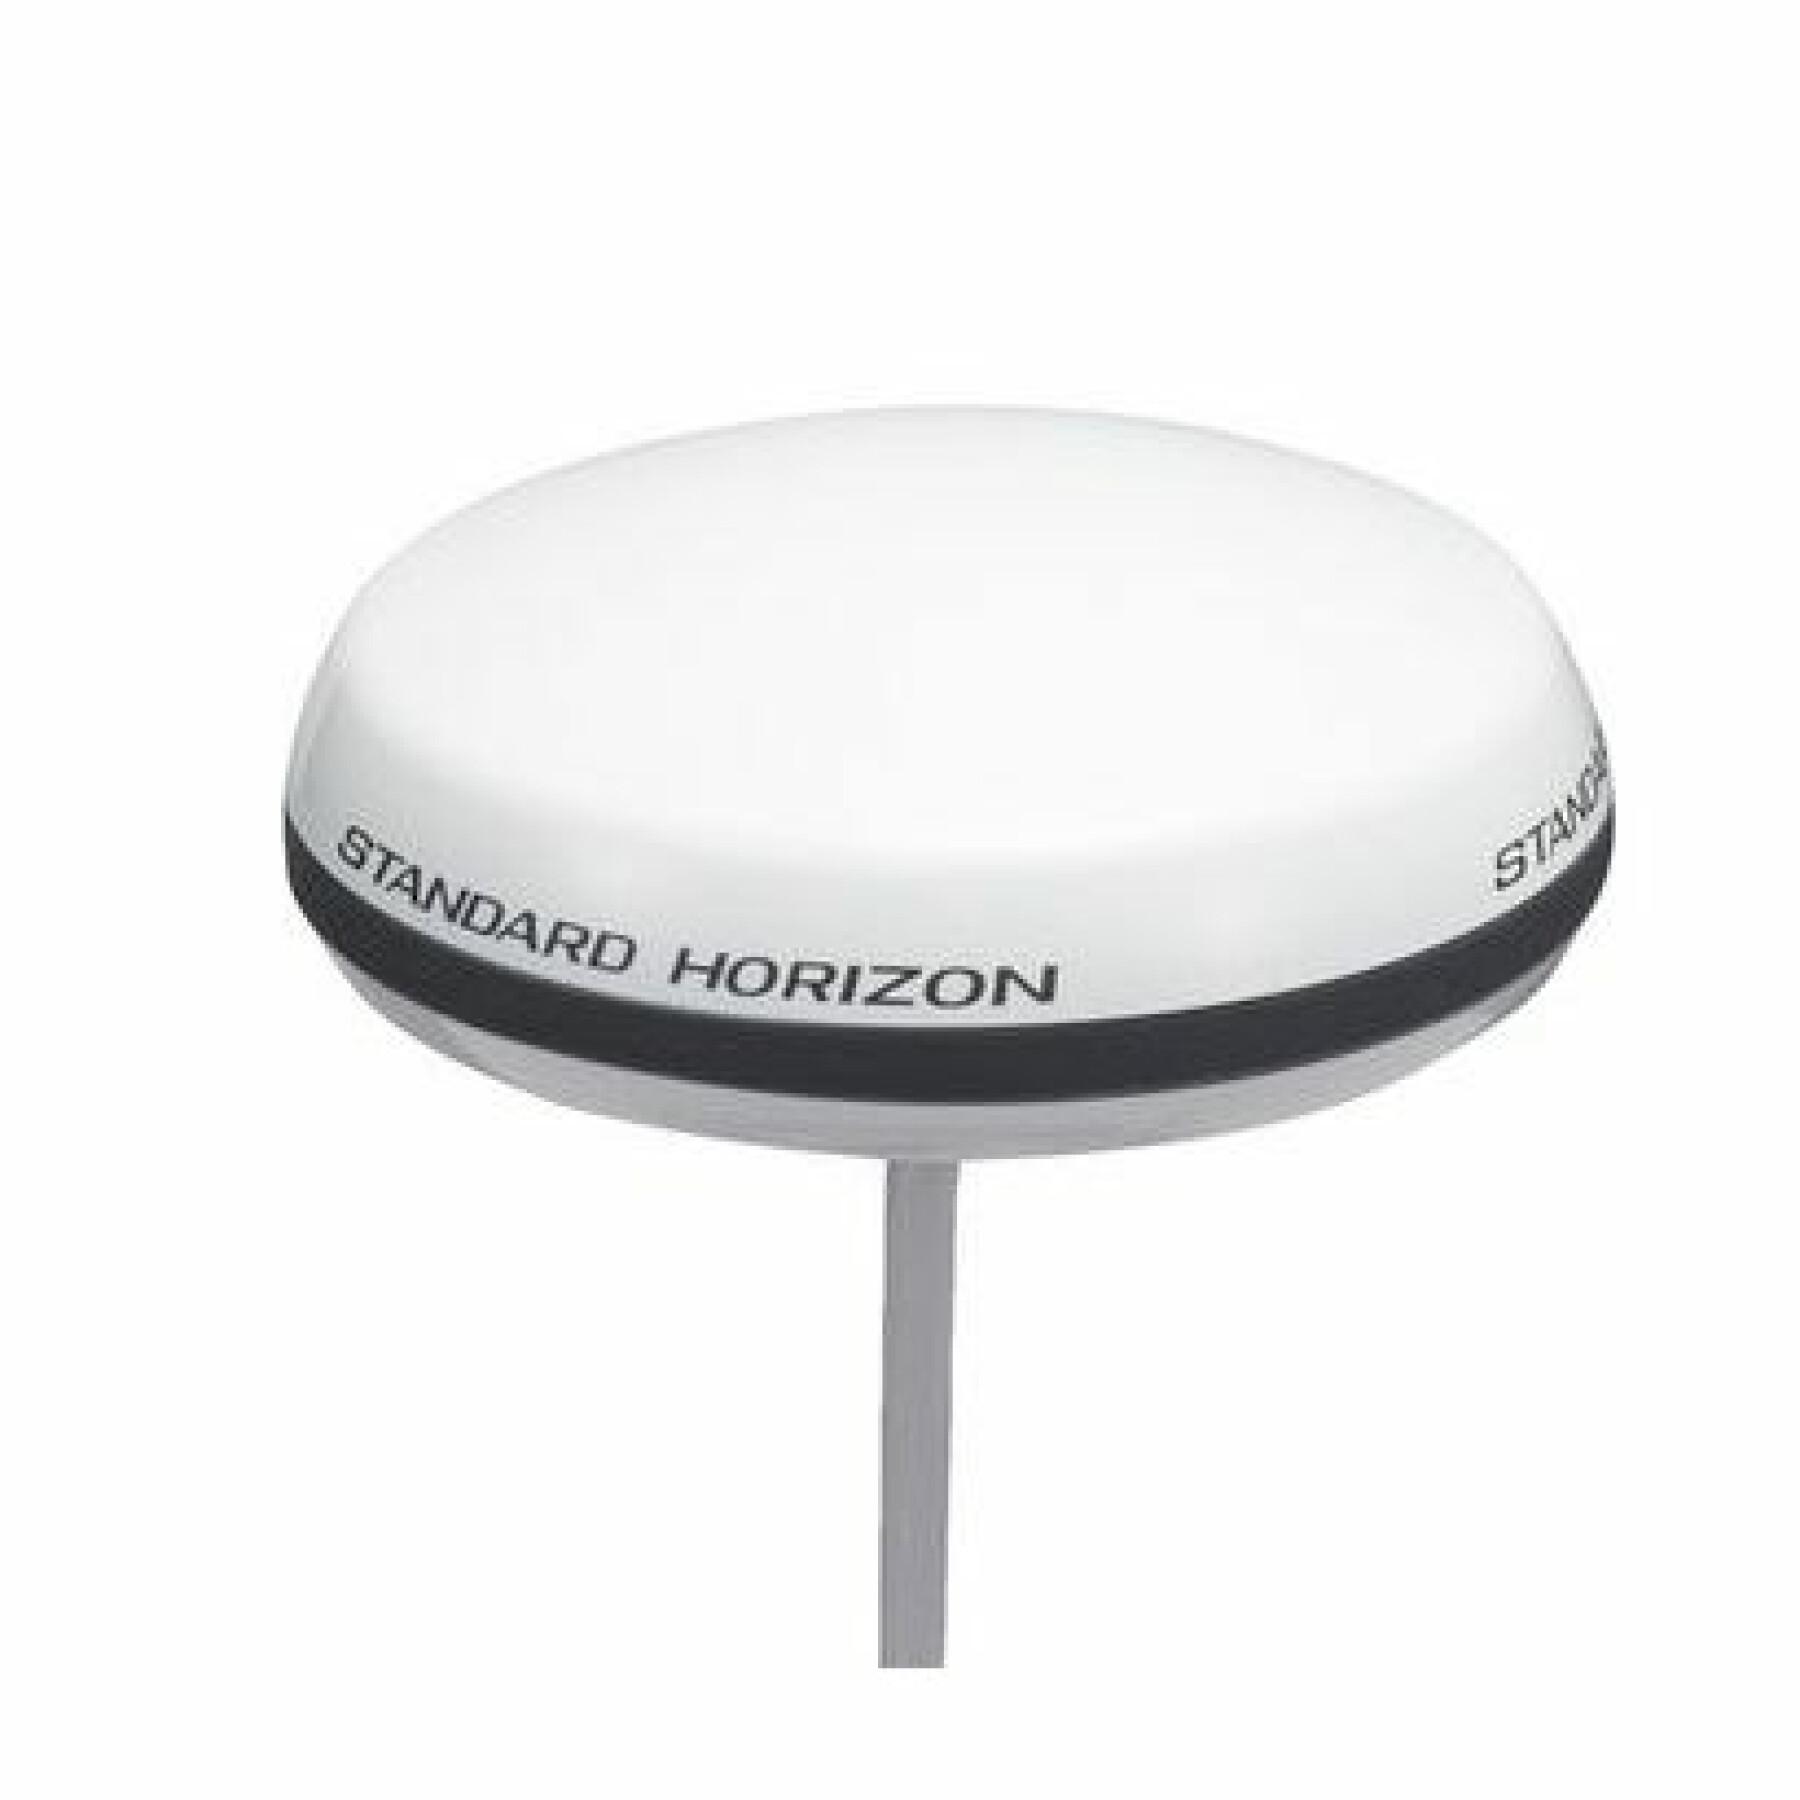 Antena gps externa de 15 m de cable para todos los modelos fijos Standard Horizon